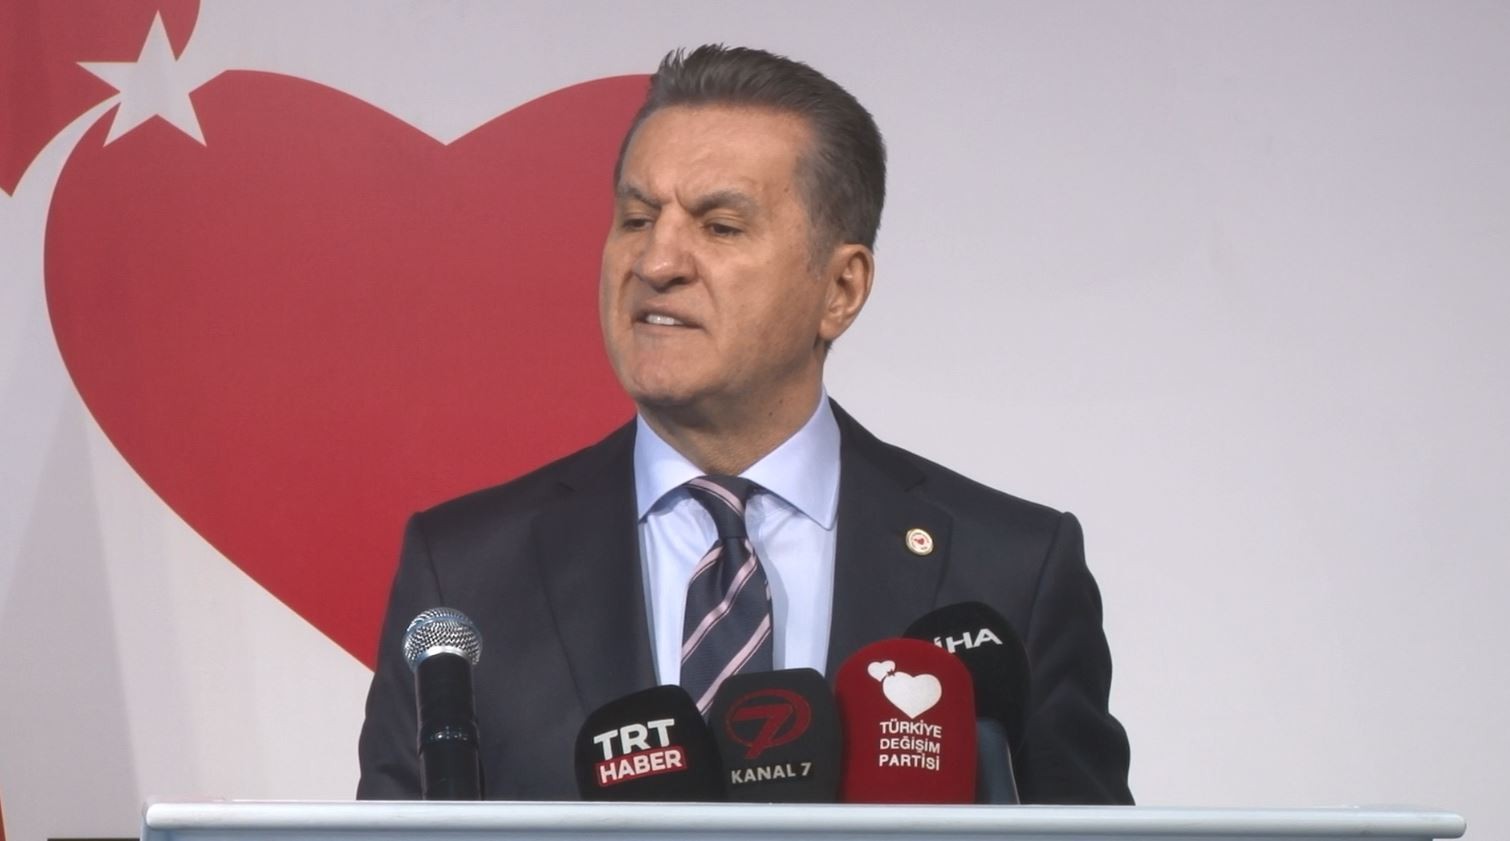 TDP Genel Başkanı Sarıgül: “Bırakın belediye başkanlarının karnesini milletimiz versin”